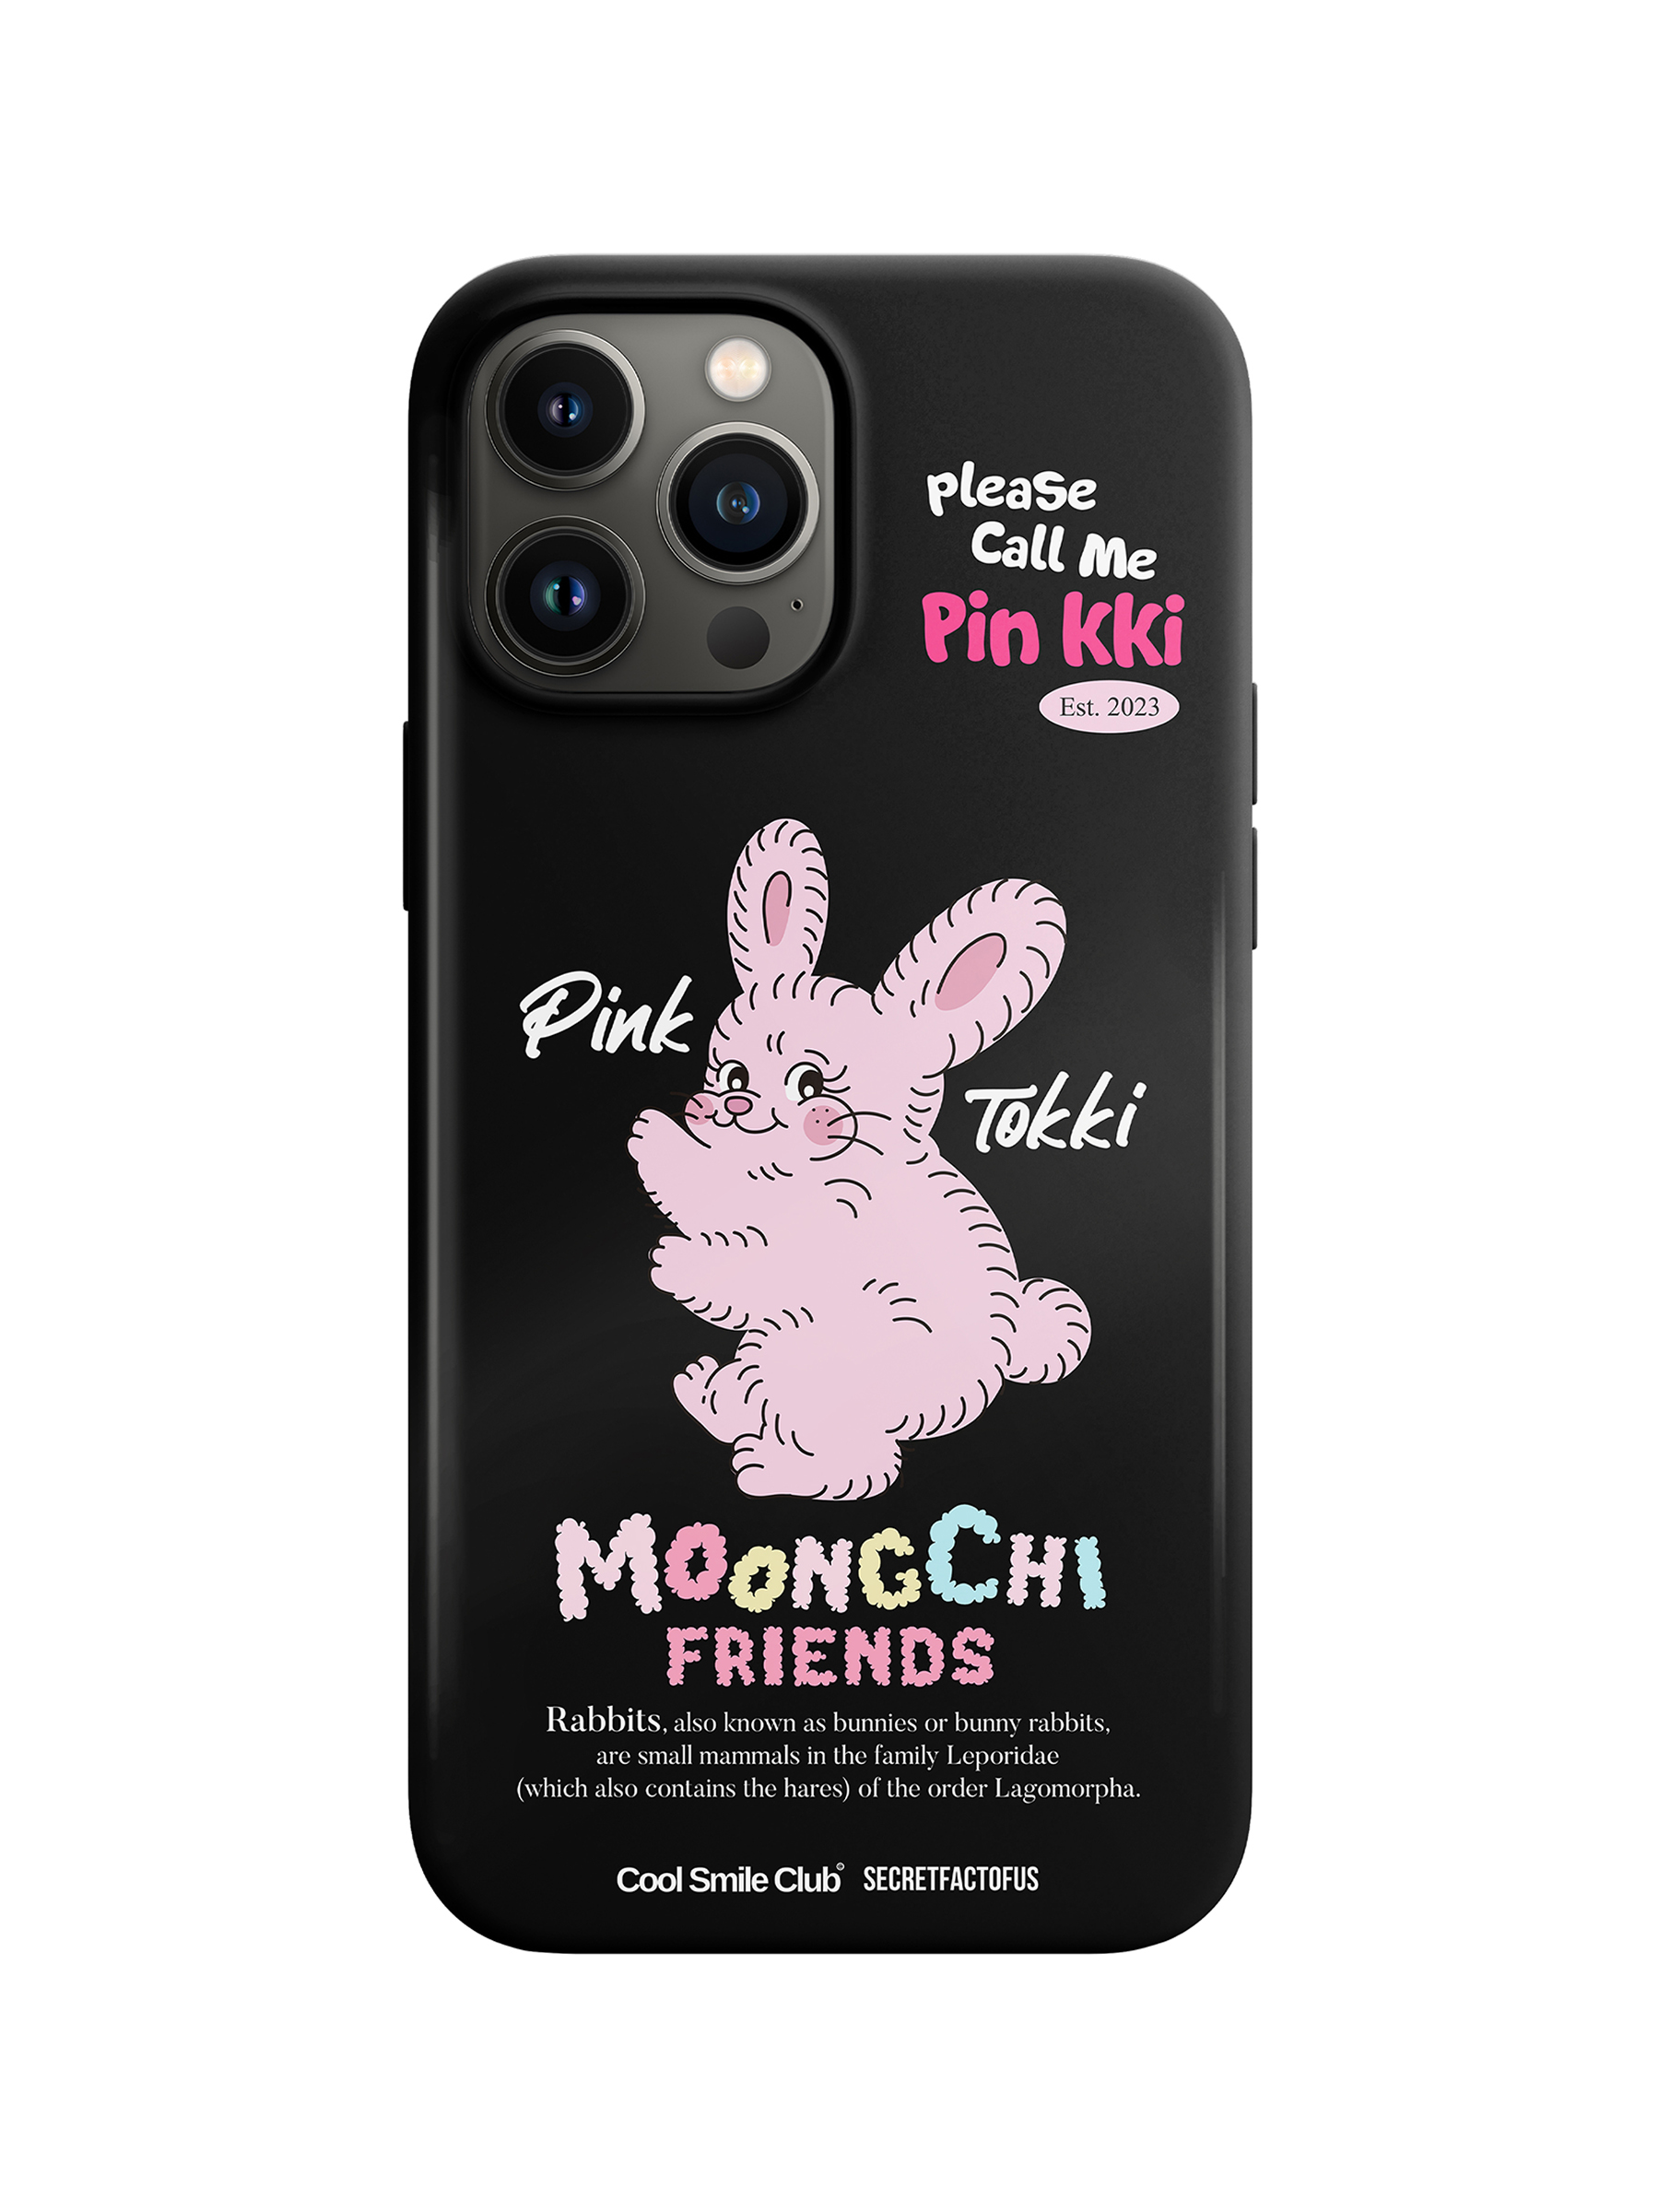 [Moongchi] BLACK PIN-KKI CASE